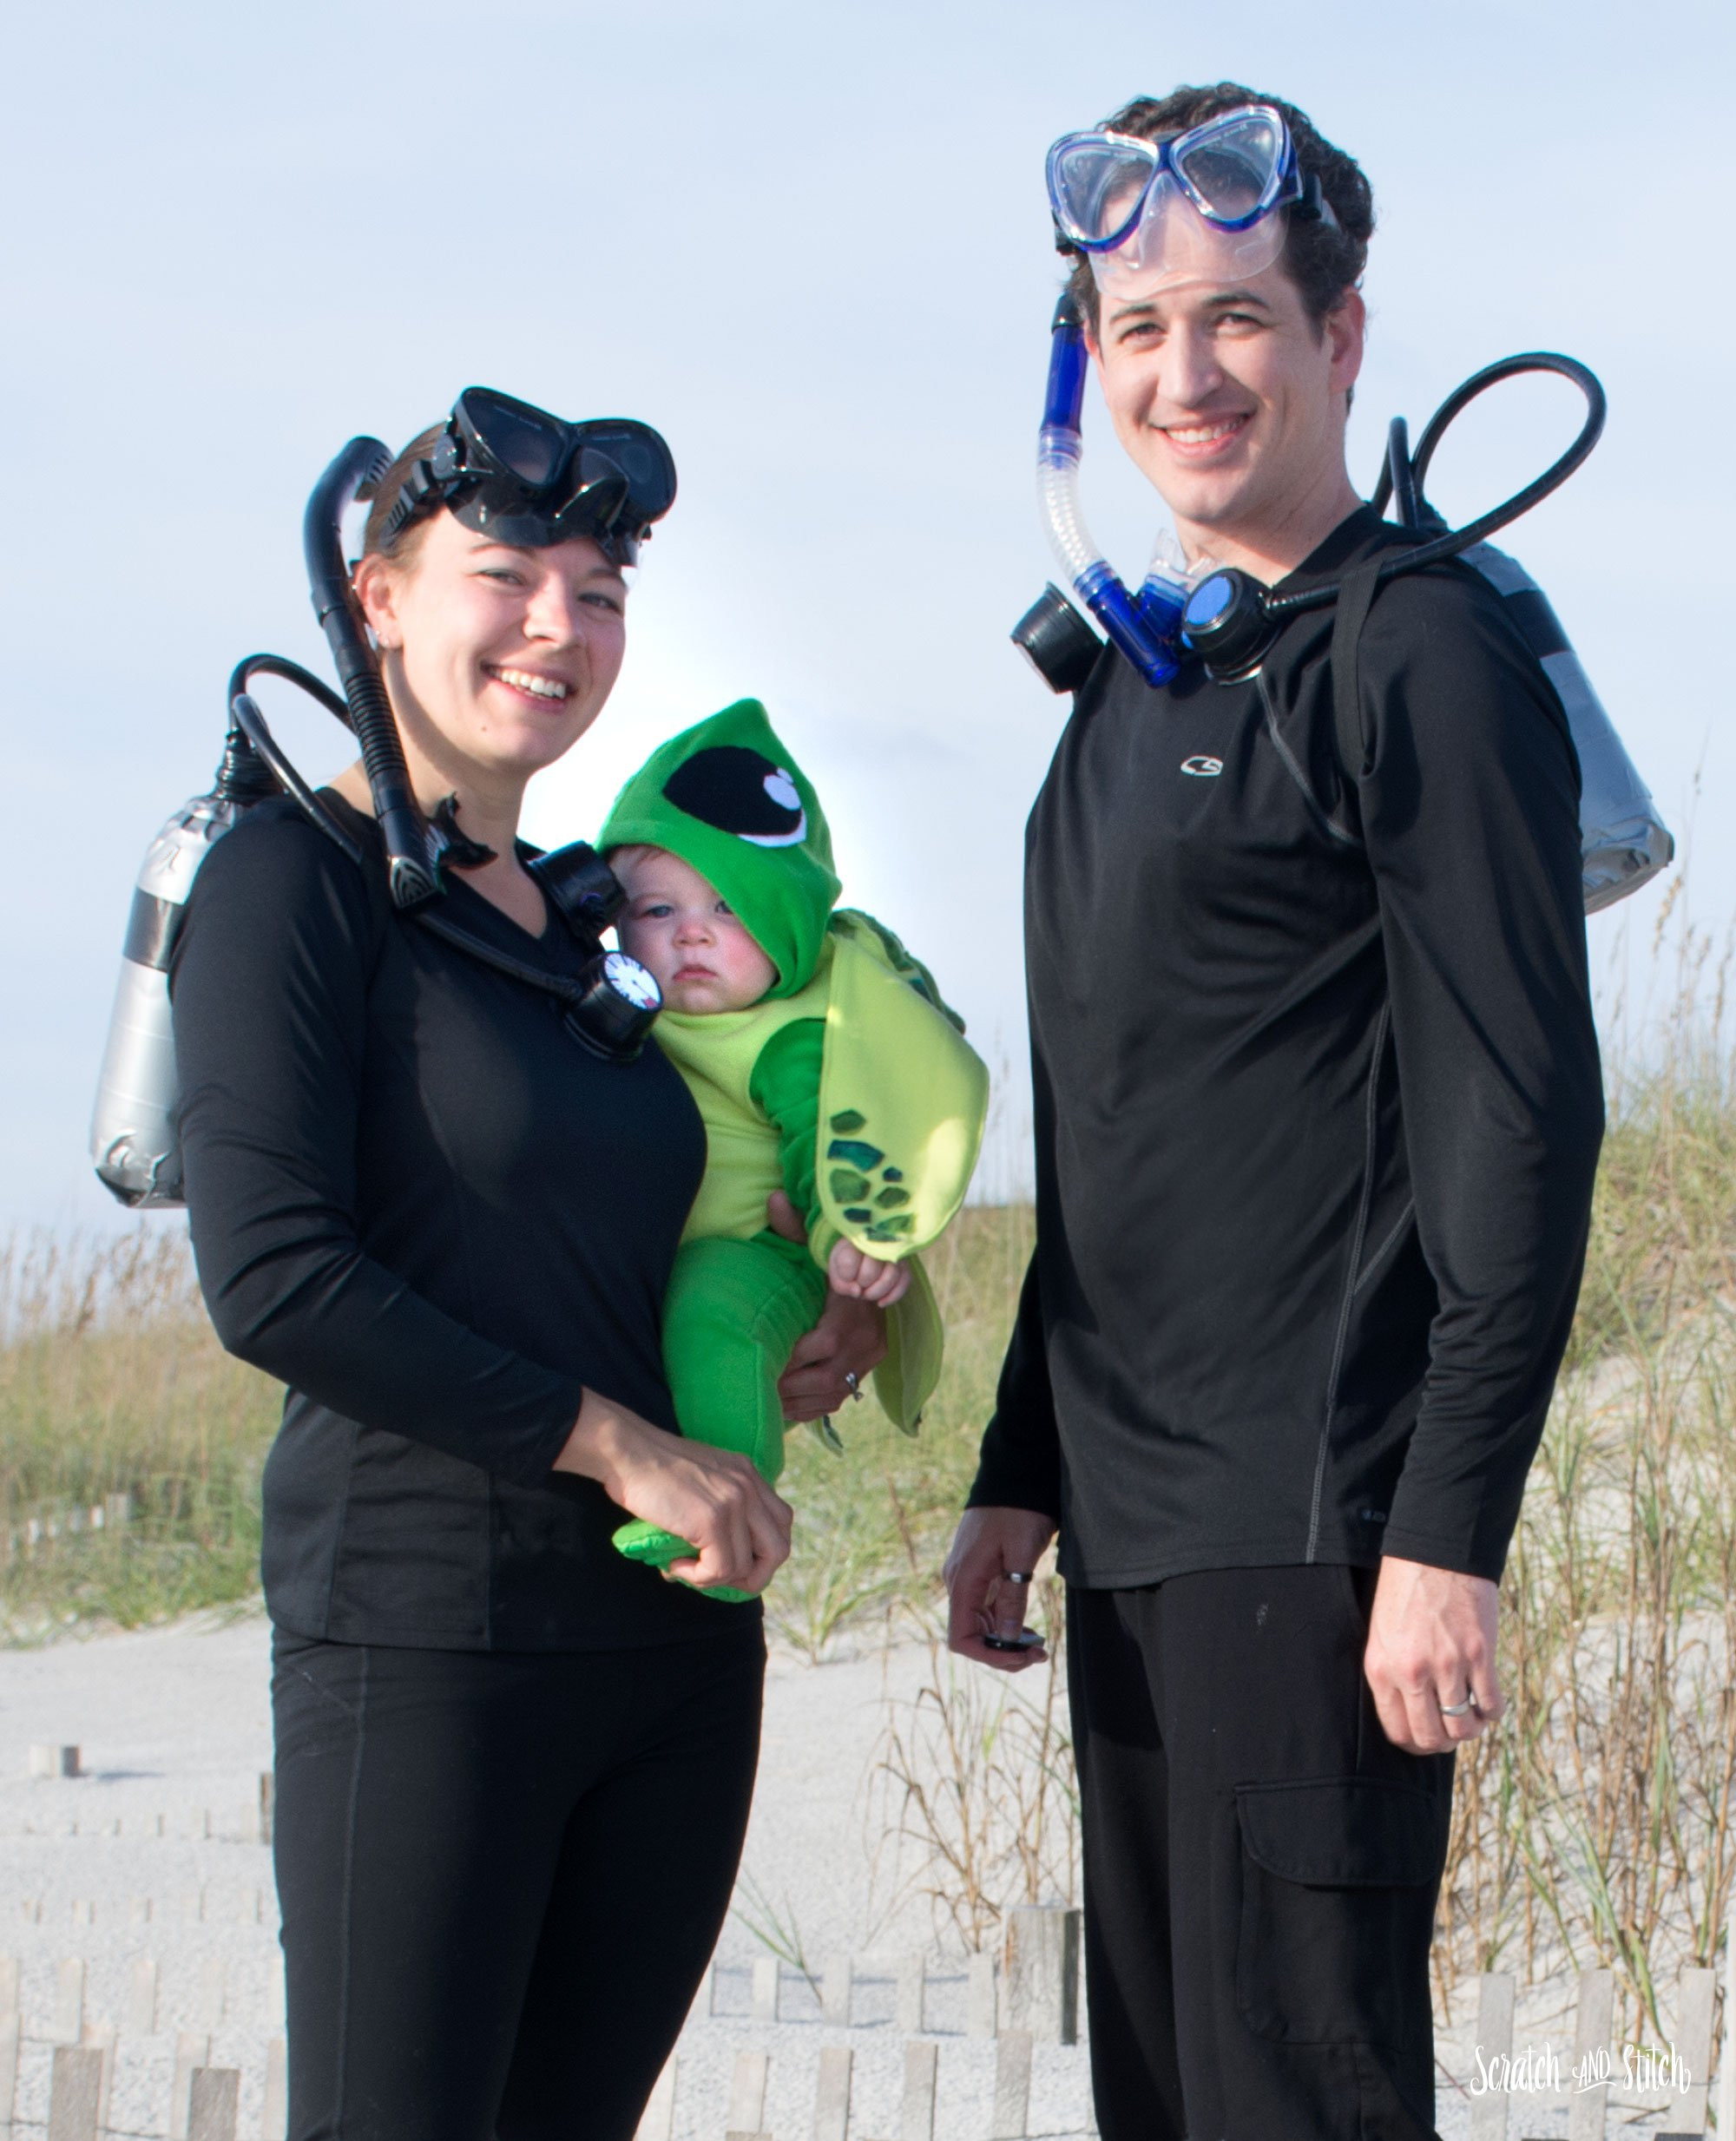 Best ideas about DIY Scuba Diver Costume
. Save or Pin DIY Scuba Diver Costume Now.